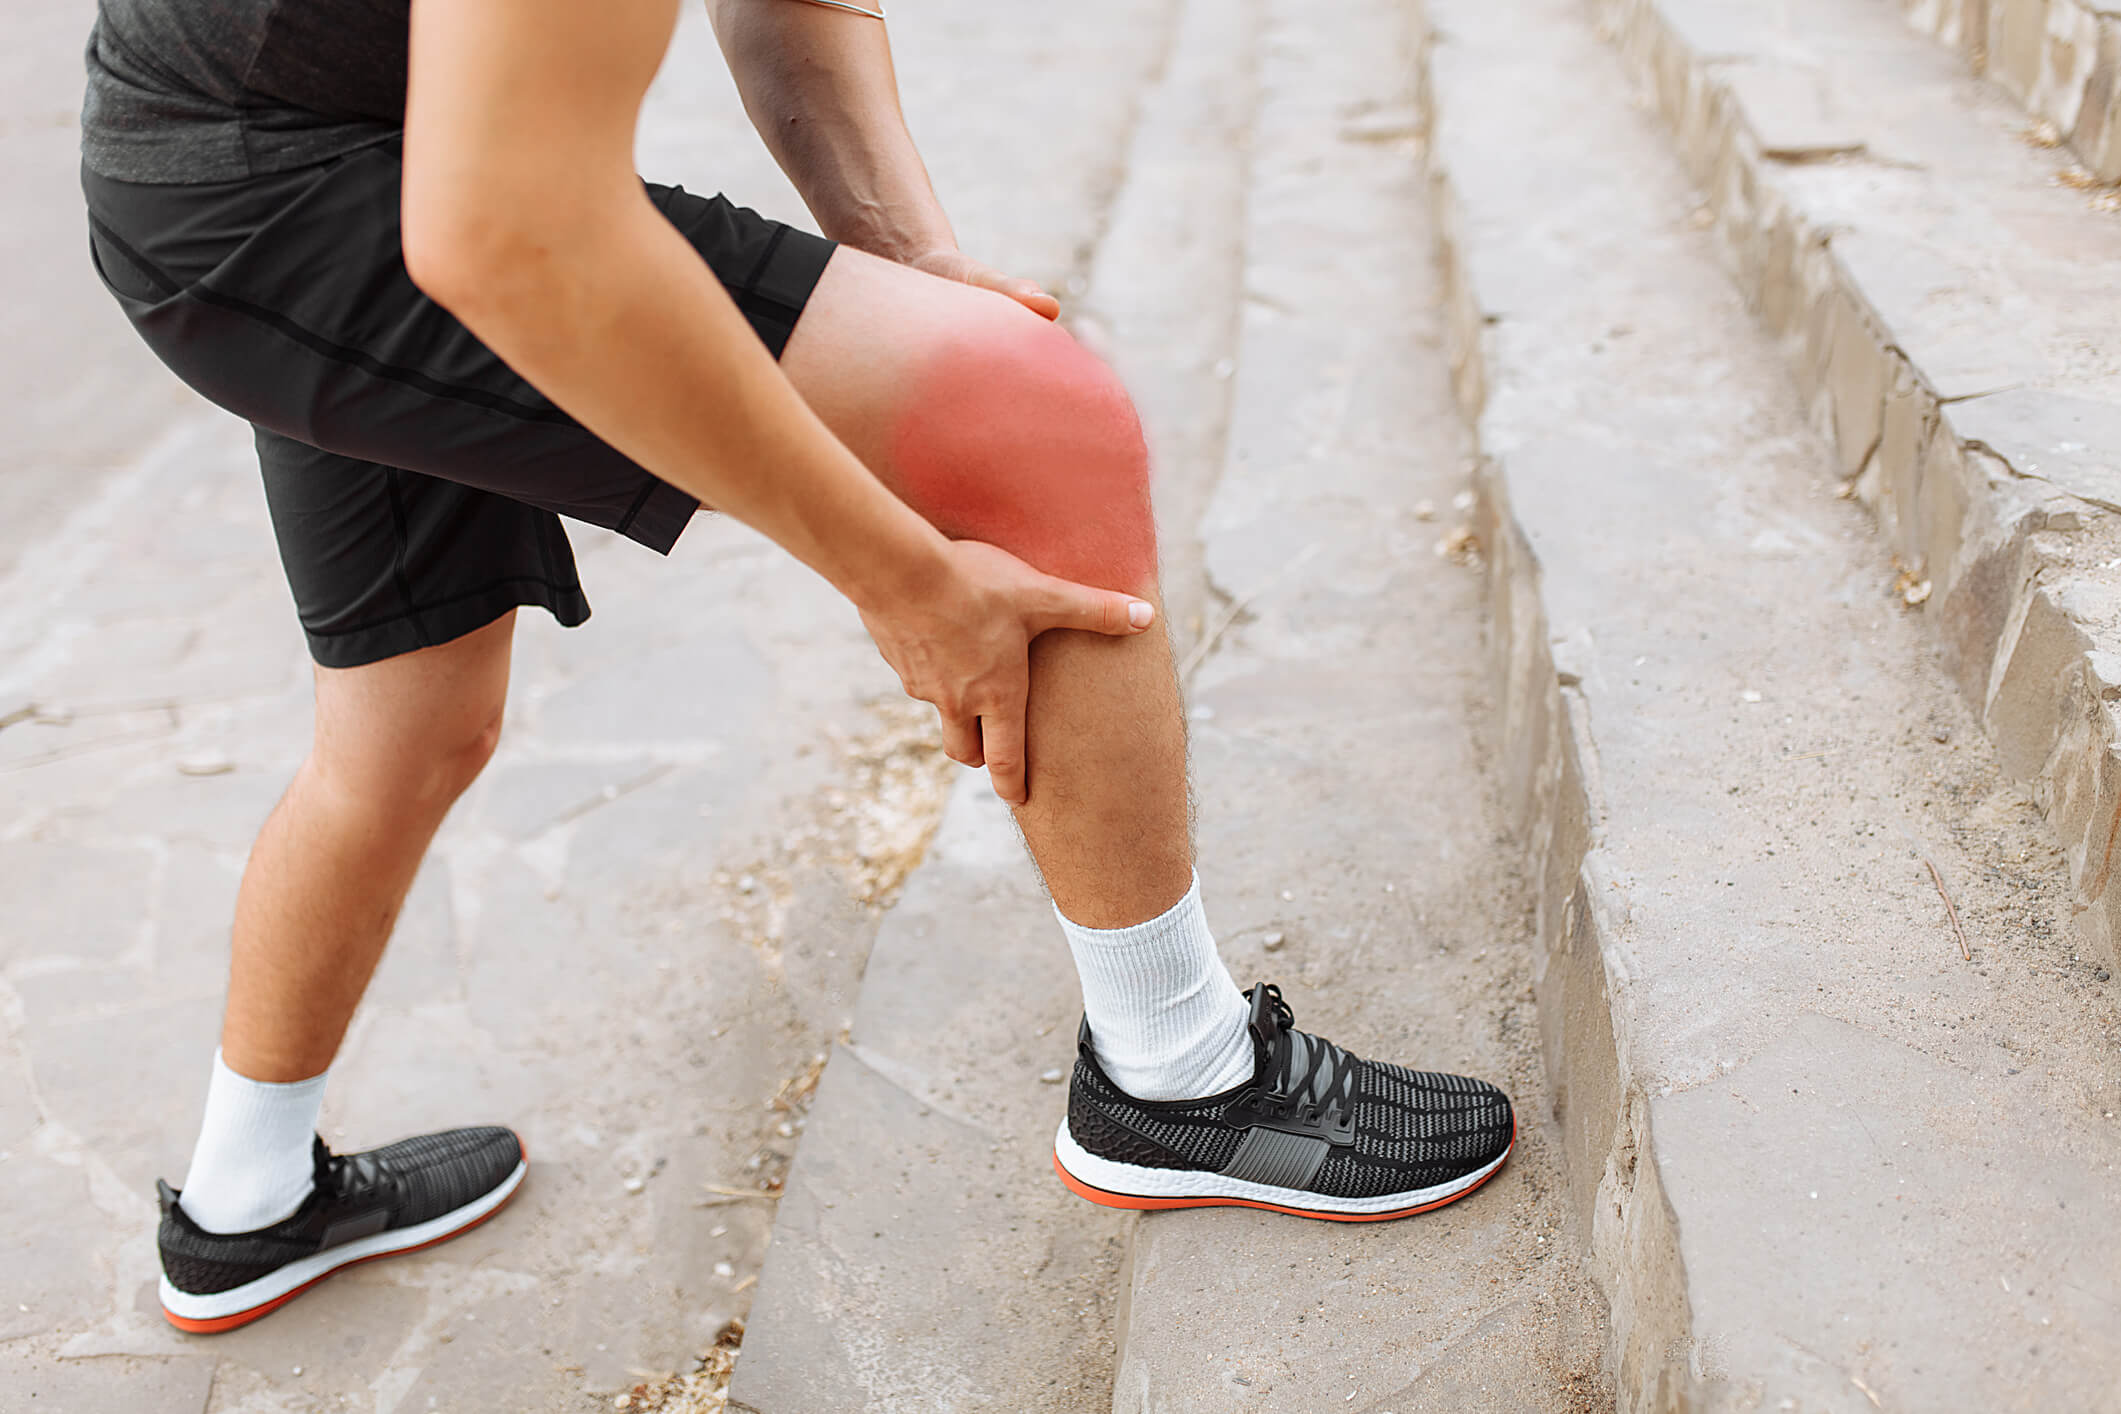 O esforço repetitivo é uma das causas mais comuns da tendinite no joelho